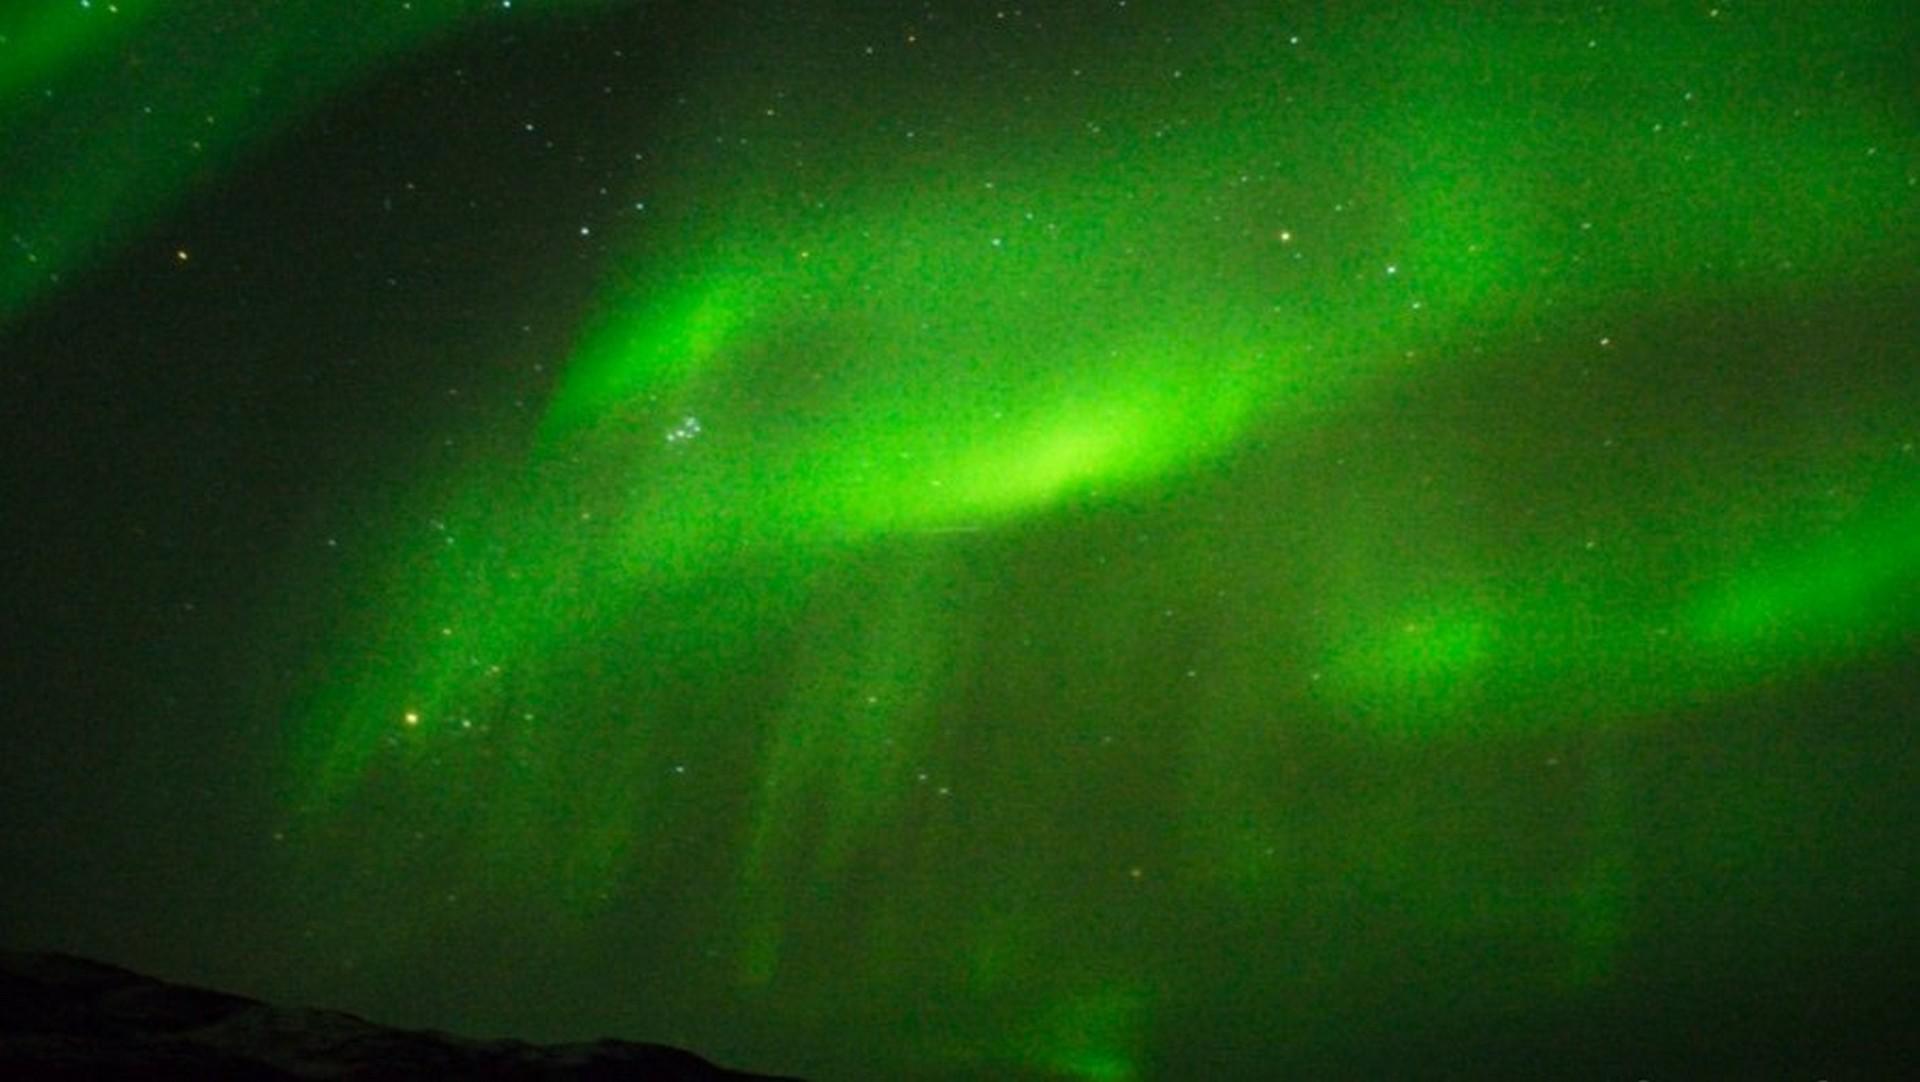 Spitsbergen - Northeast Greenland - Aurora Borealis